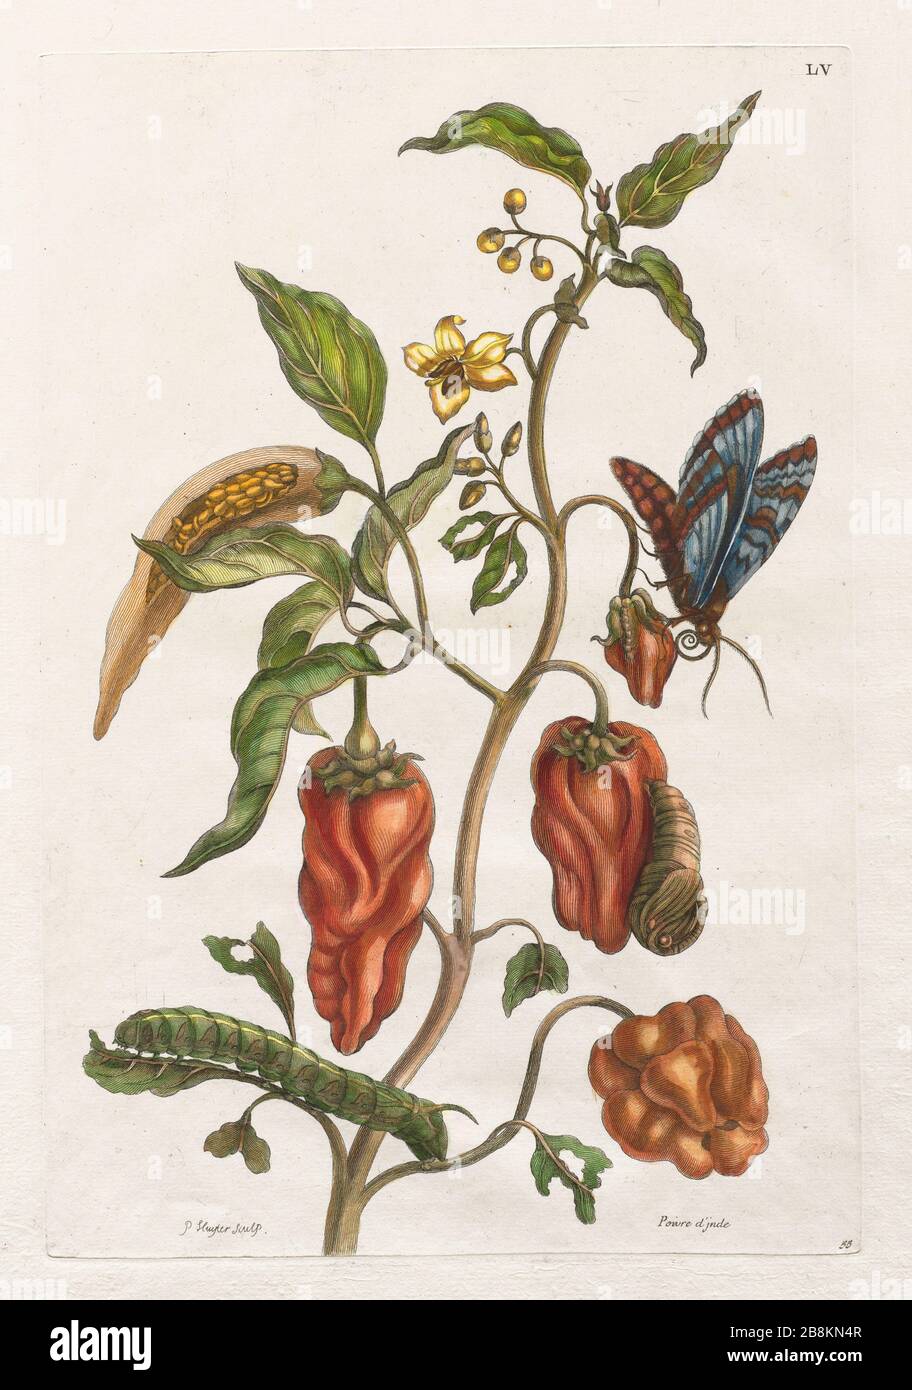 Pfefferpflanze und Schmetterling aus Metamorphosis insectorum Surinamensium (Surinam-Insekten) ein handfarbenes Buch aus dem 18. Jahrhundert von Maria Sibilla Merian, das 1719 in Amsterdam veröffentlicht wurde Stockfoto